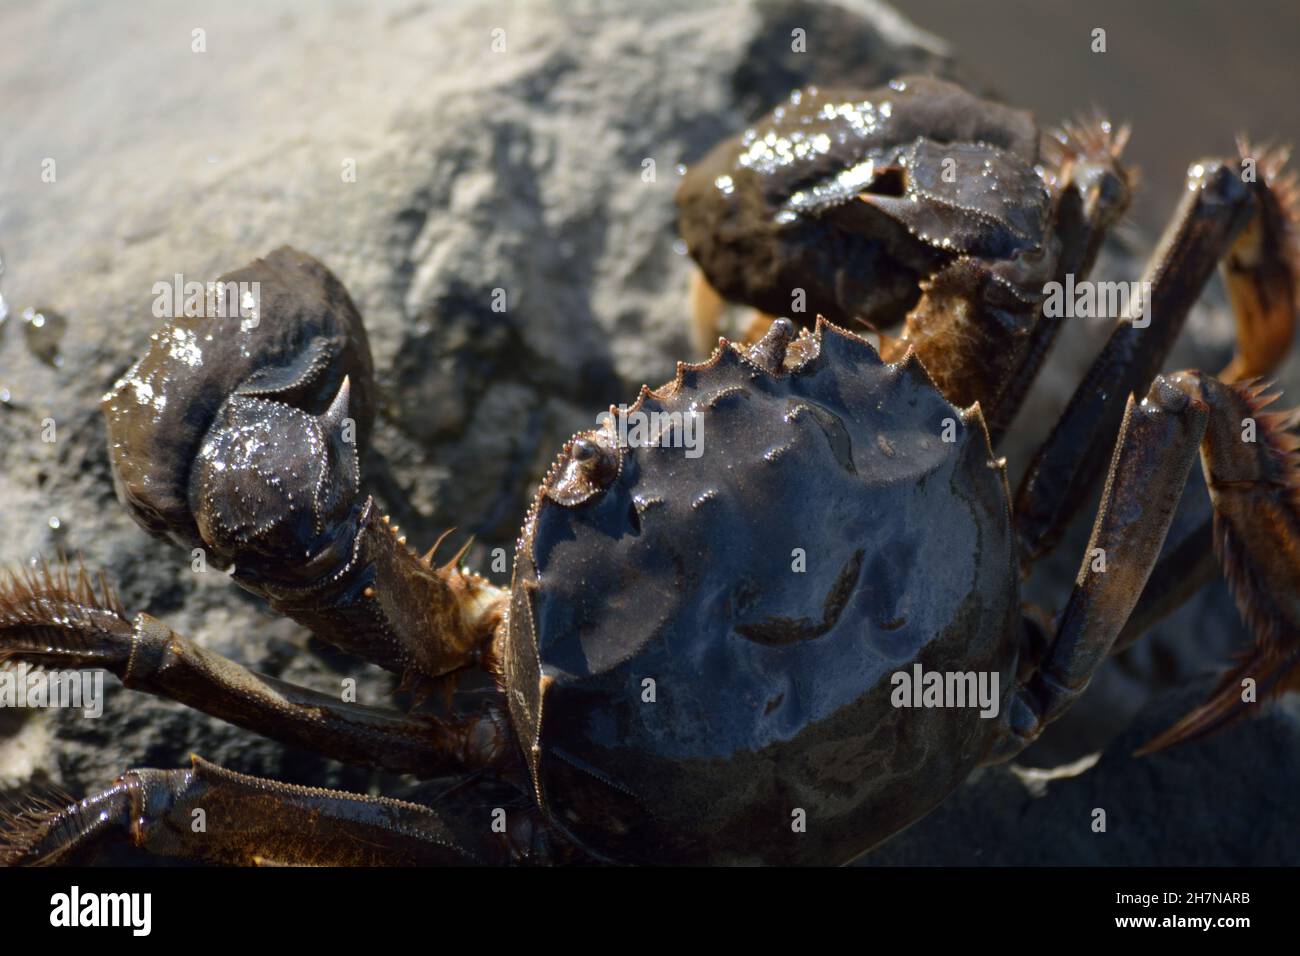 Invasive Chinese Mitten Crab. Stock Photo